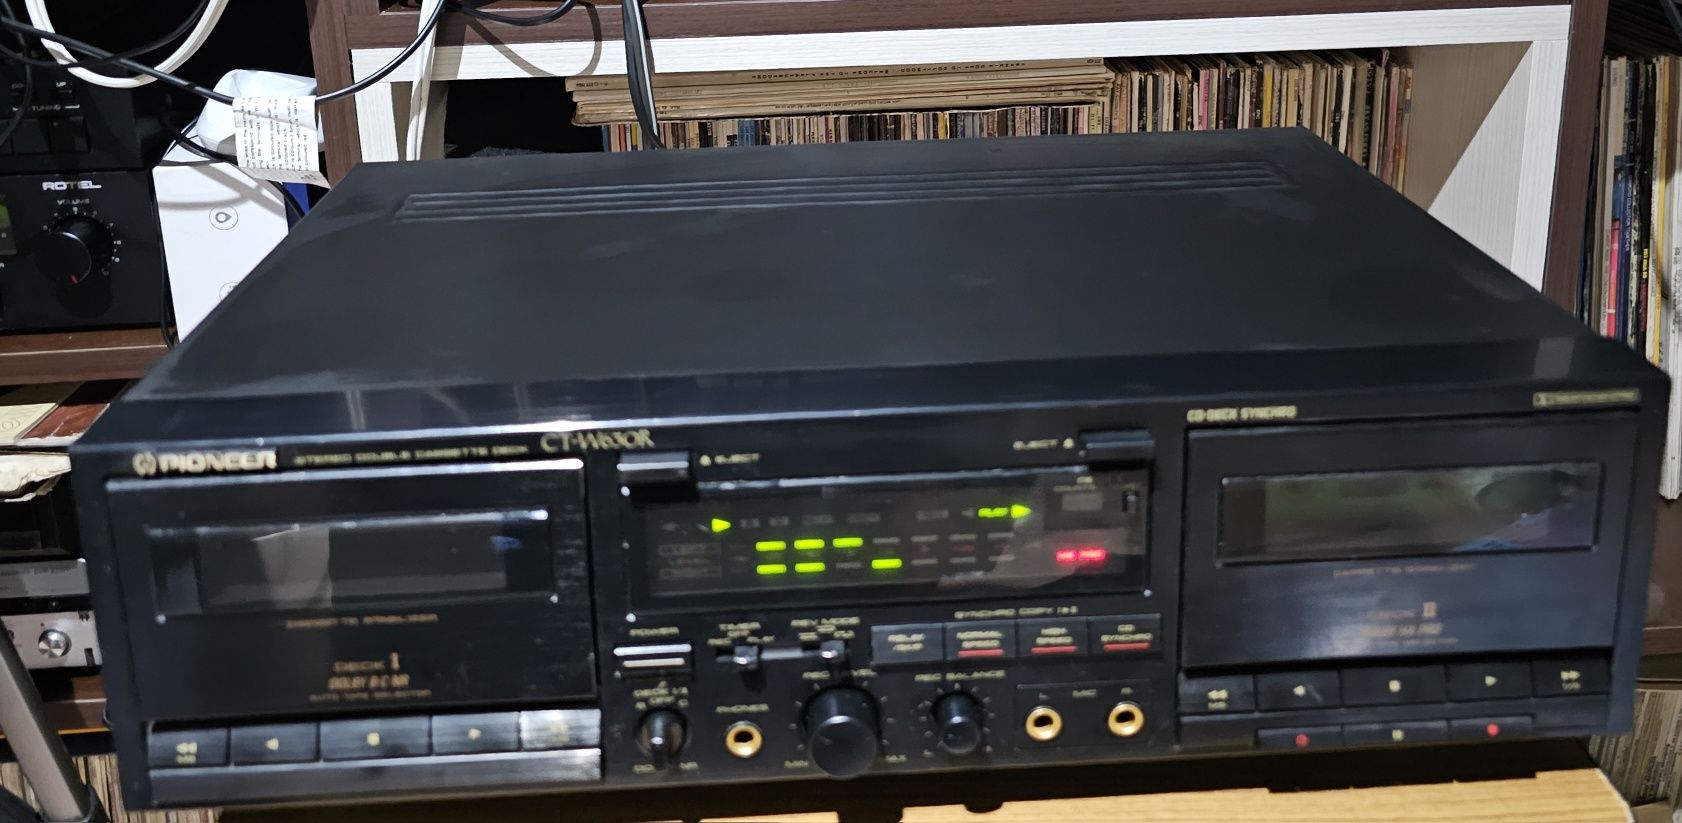 Pioneer DVR 920H si CT-W630R, Yamaha CDX 390 și DVD S700